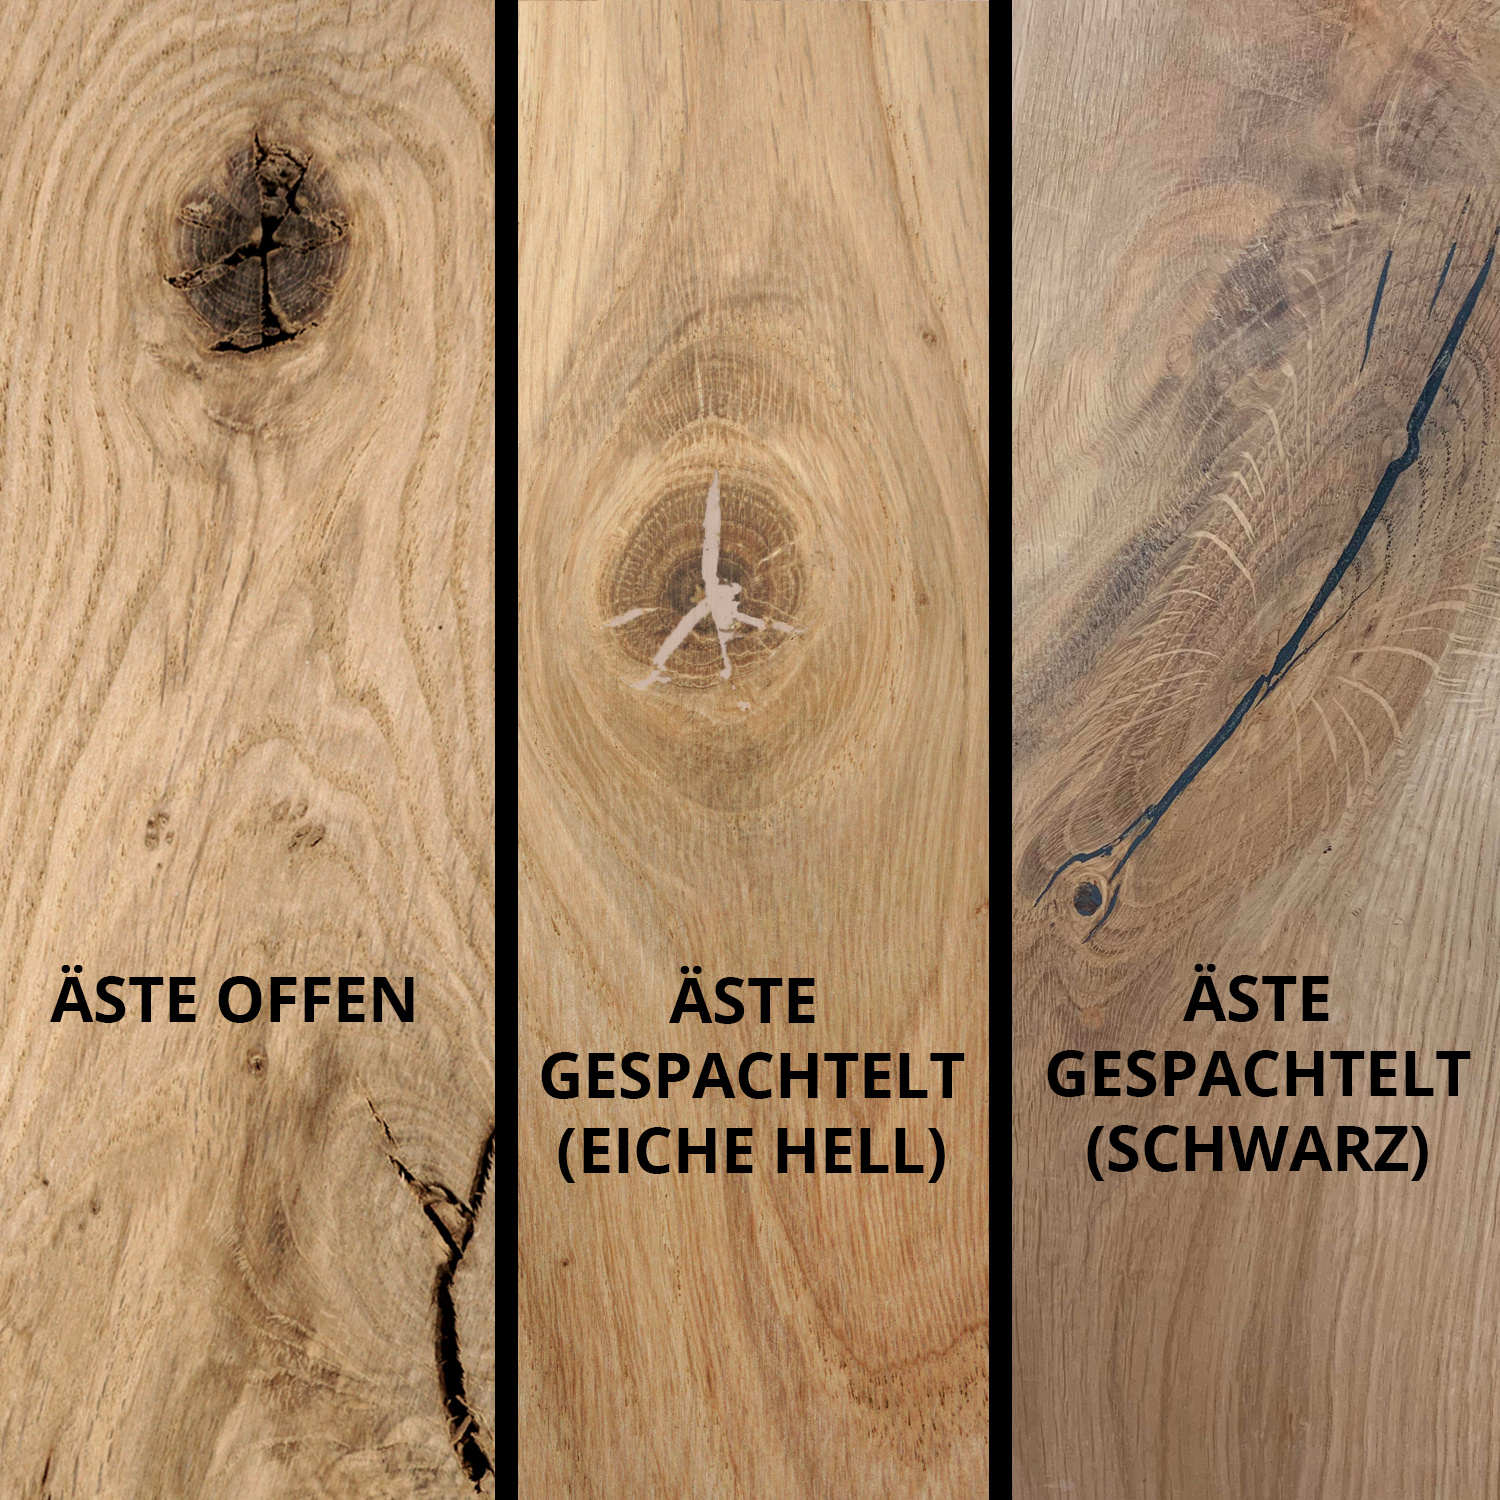  Tischplatte Eiche rund nach Maß - 4 cm dick (1-Schicht) - Breite Lamellen (10 - 12 cm breit) - Eichenholz rustikal - verleimt & künstlich getrocknet (HF 8-12%) - Durchmesser: 50 - 117 cm